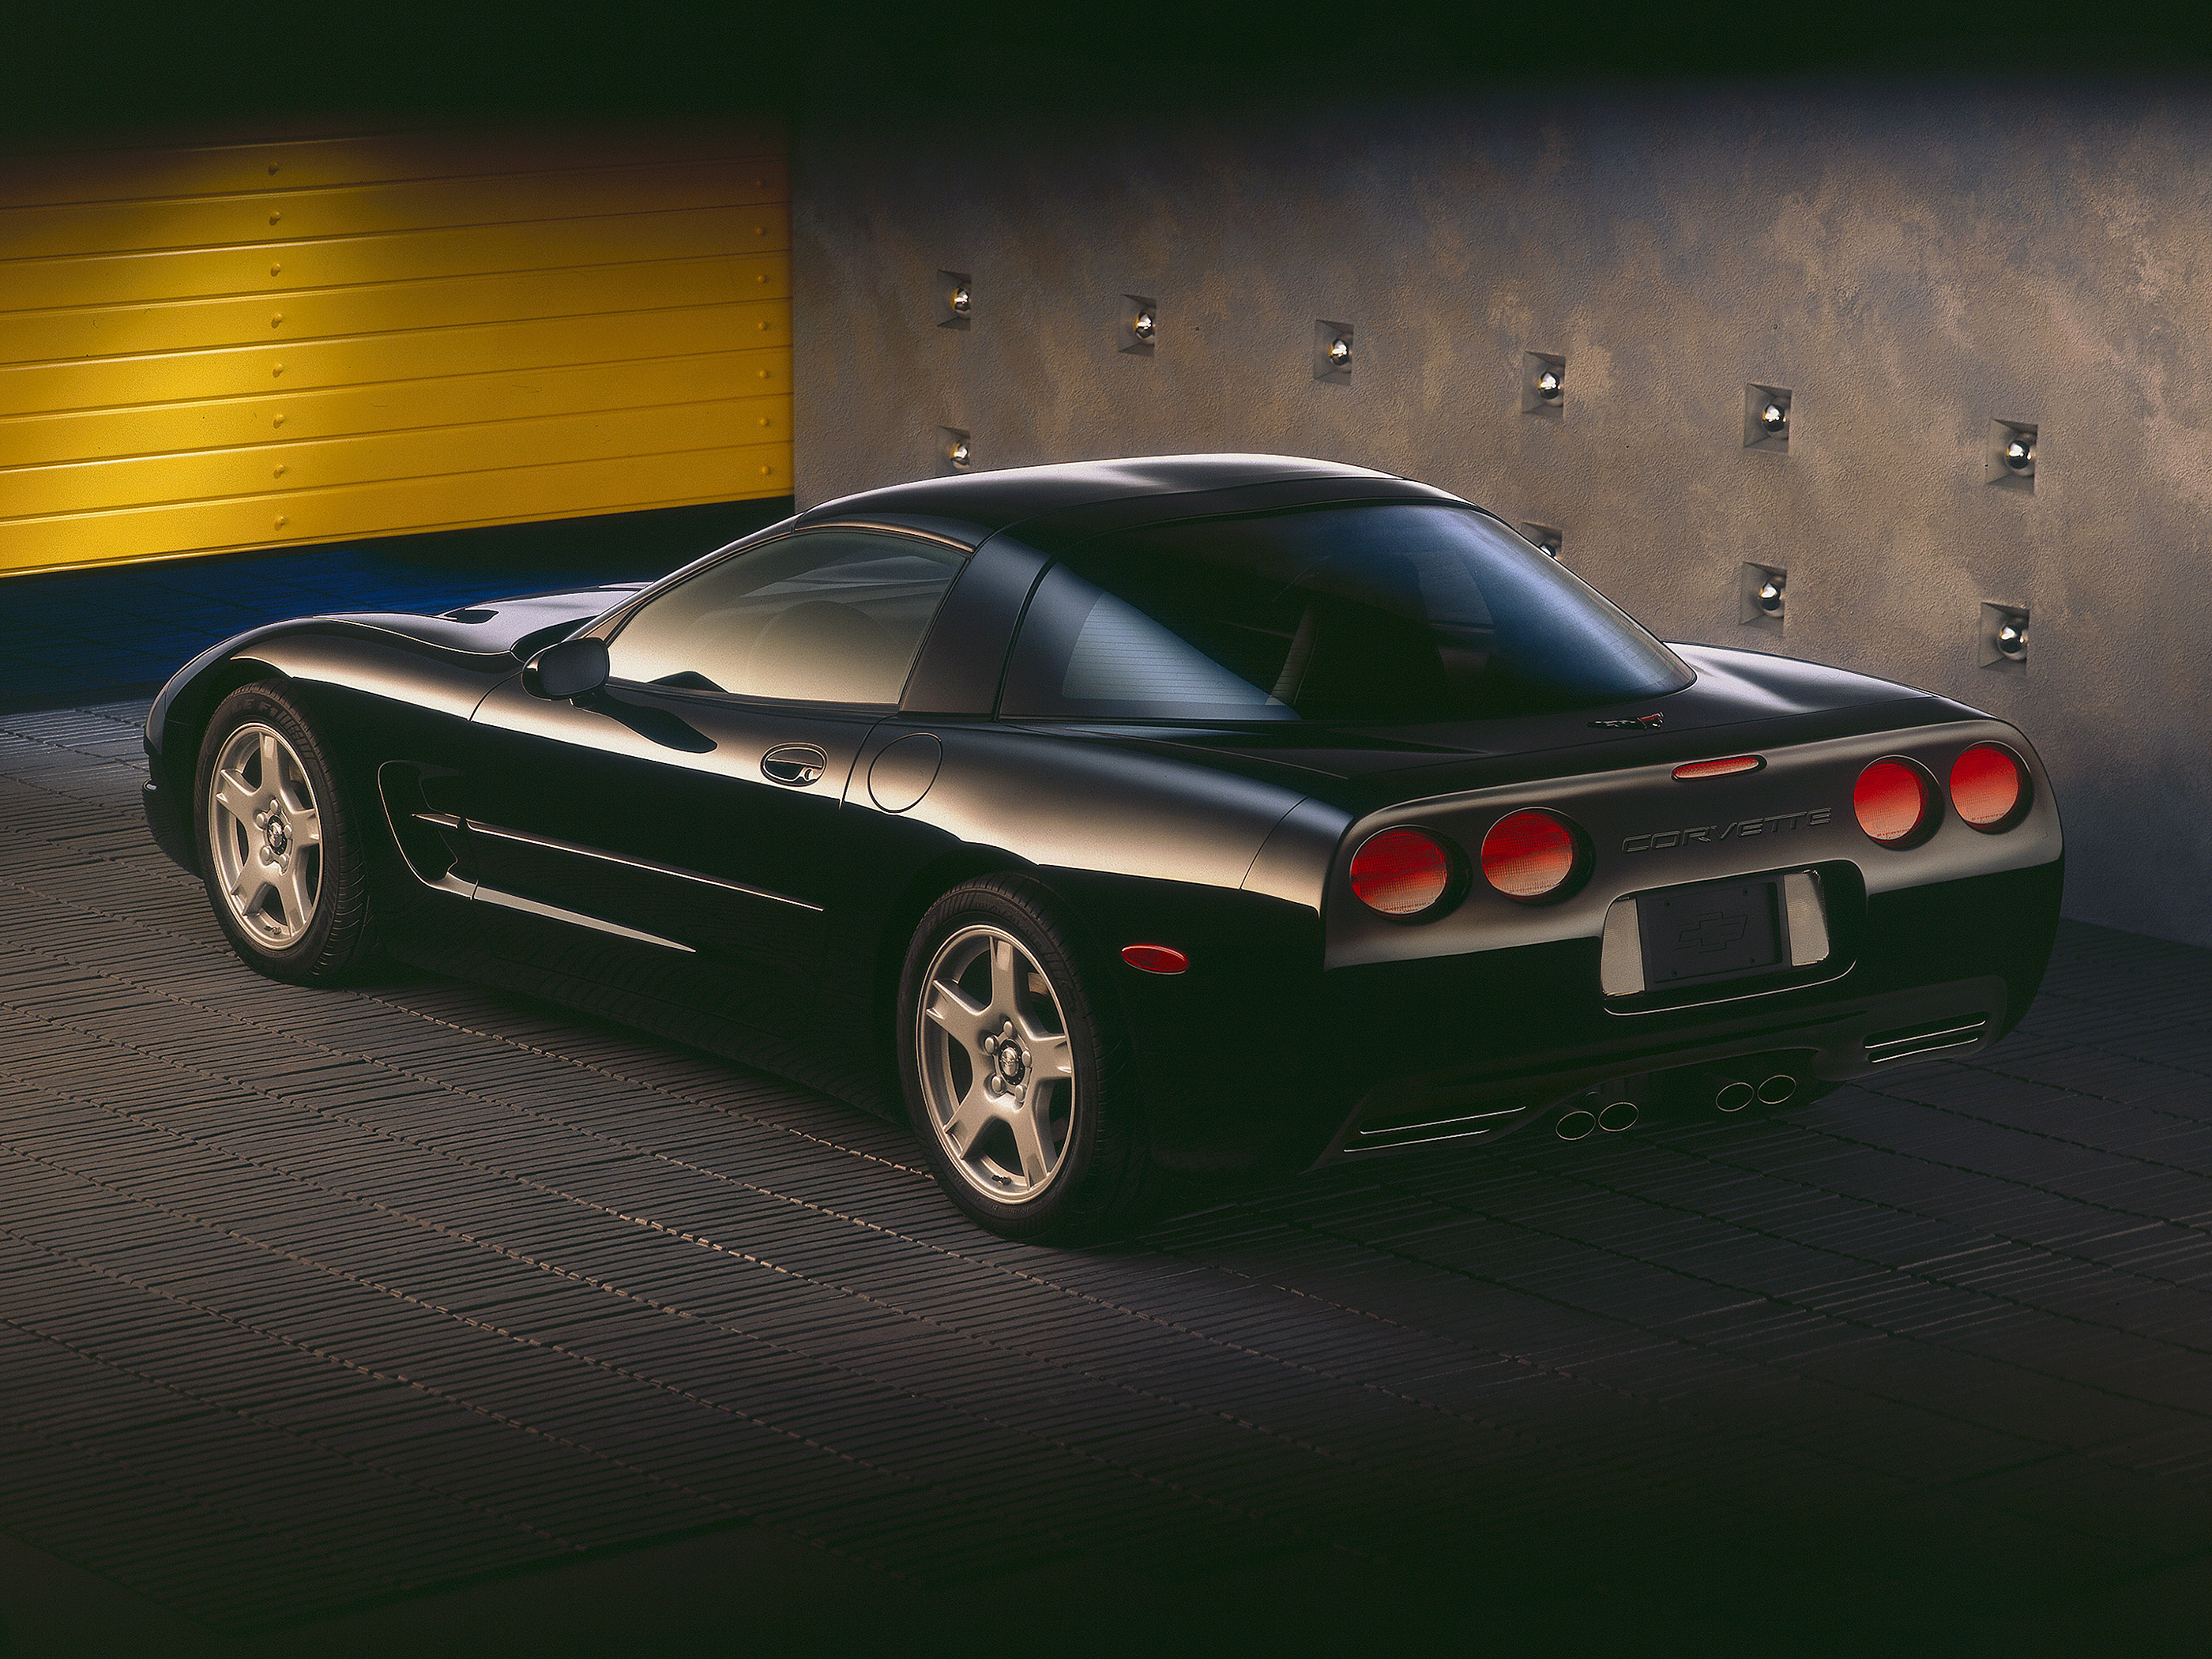  1997 Chevrolet Corvette Wallpaper.